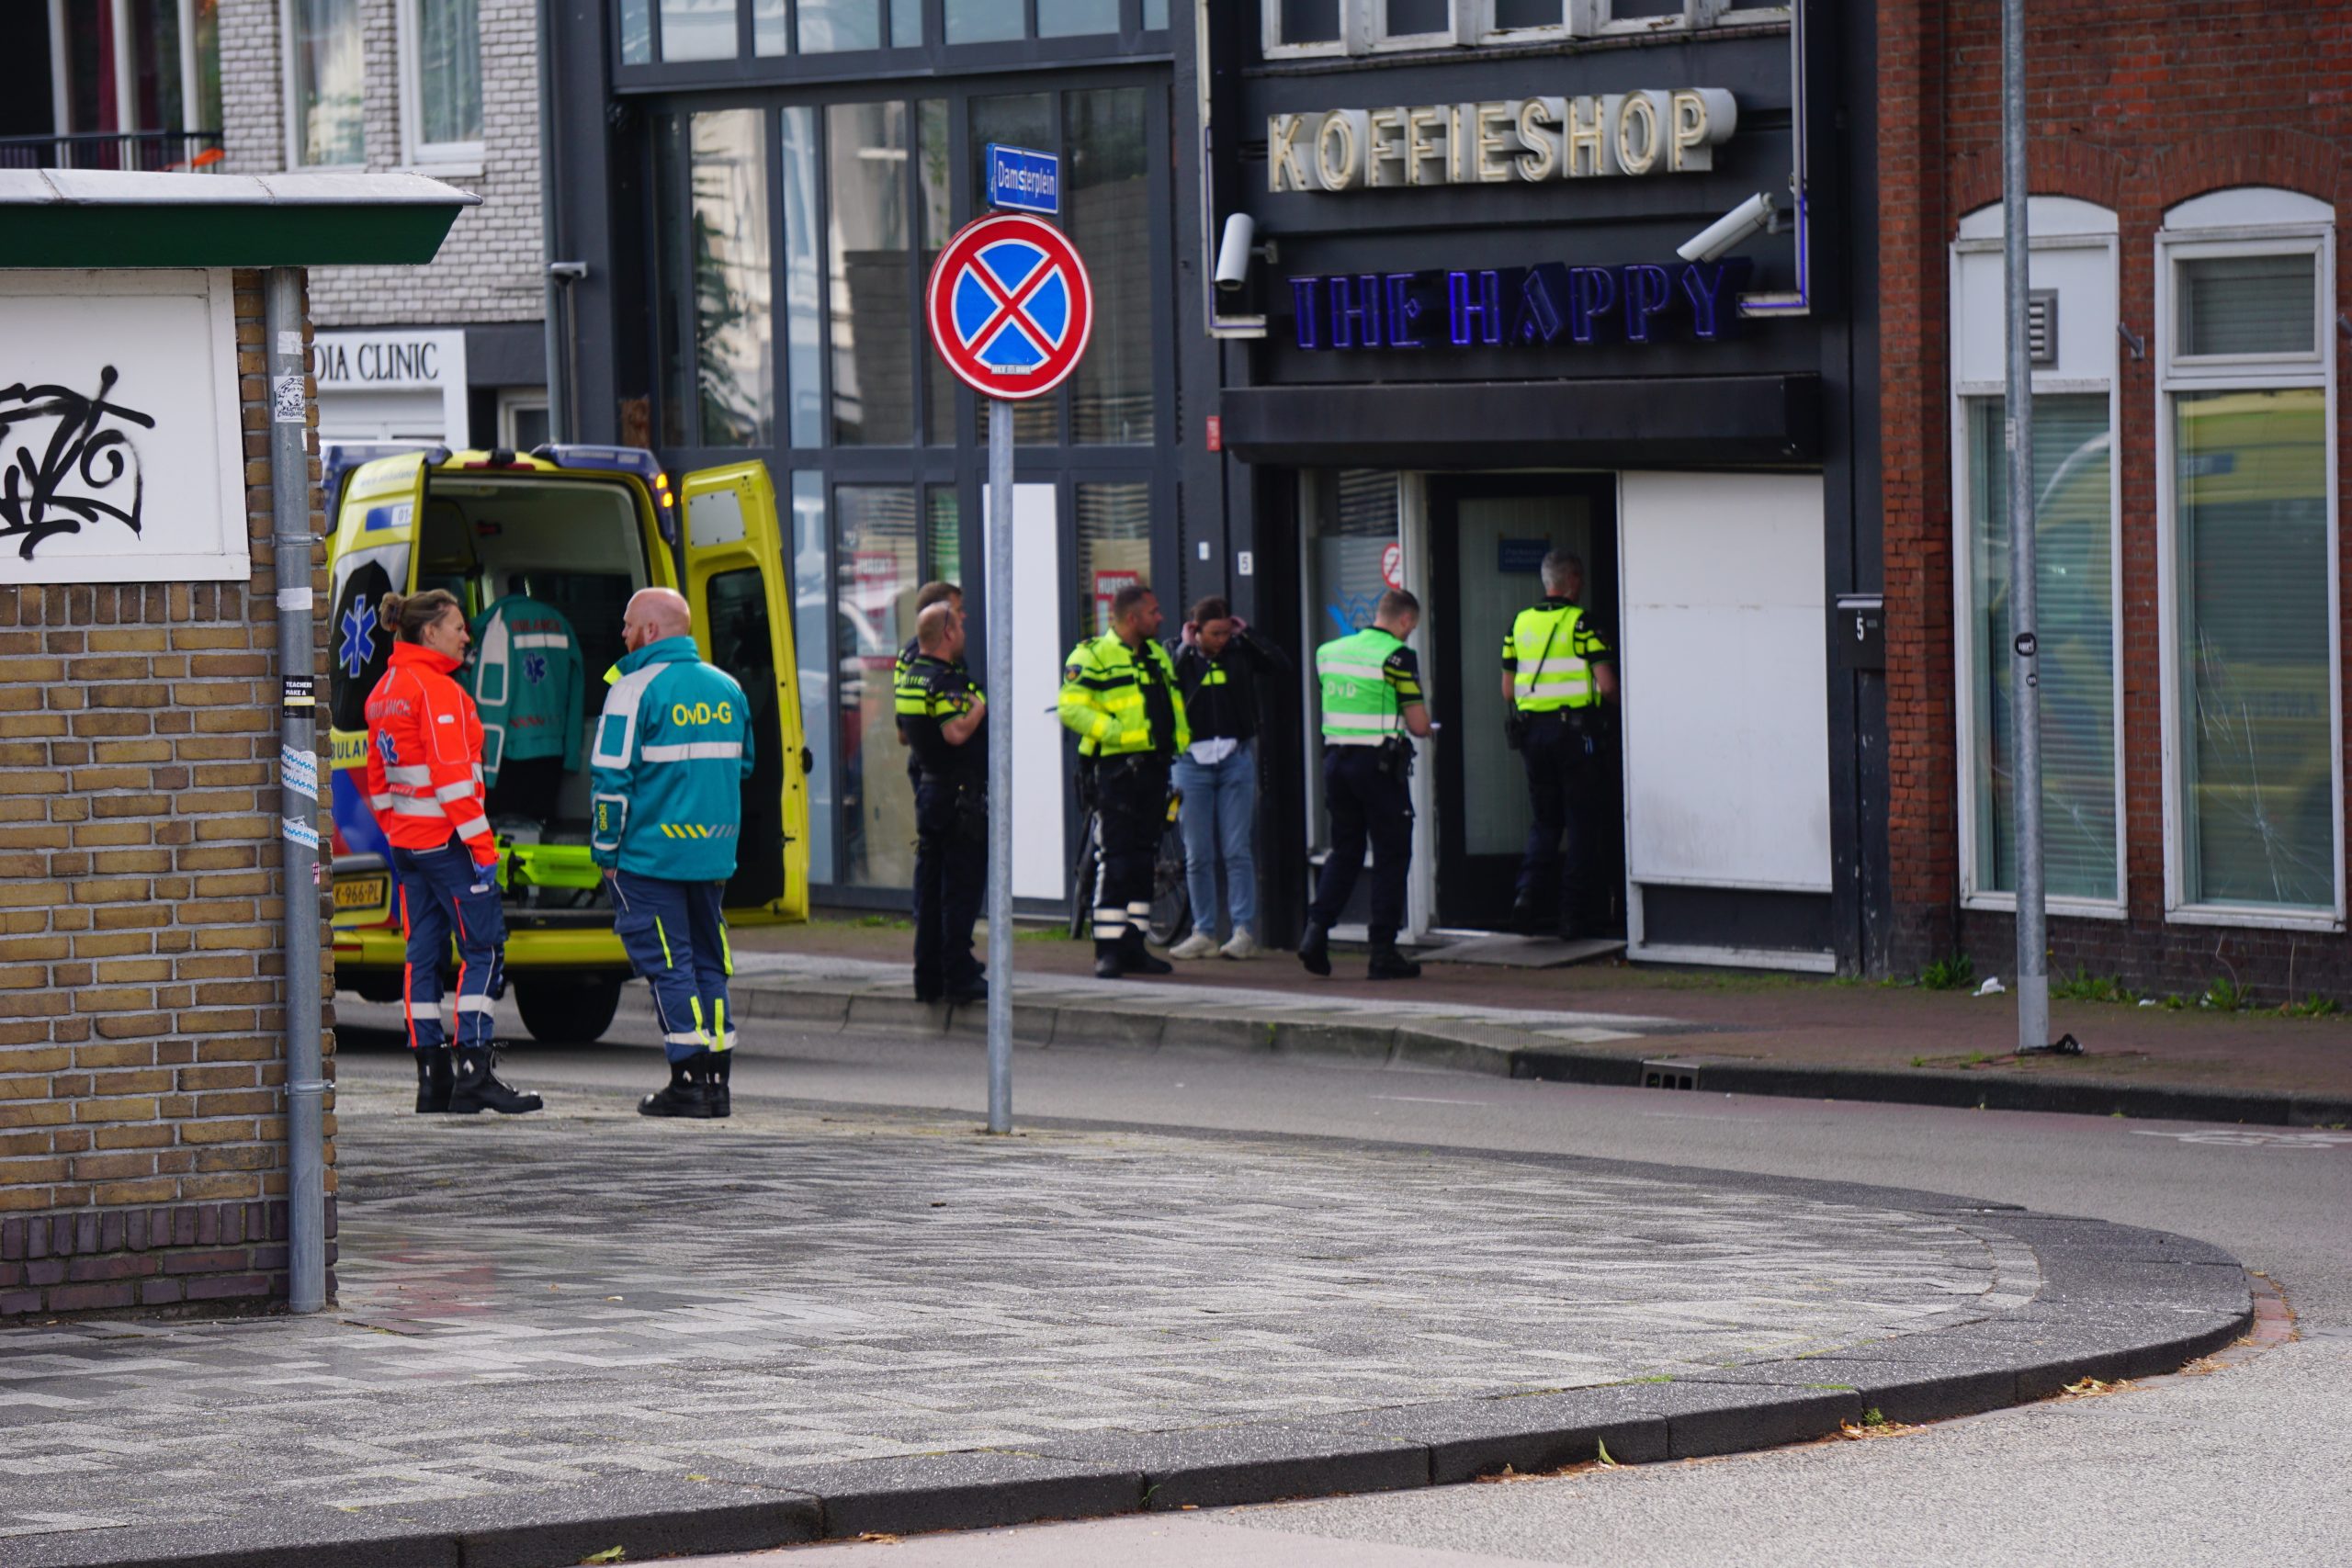 GRONINGEN - Donderdagmorgen 4 juli tegen 09.05 uur heeft een steekincident plaatsgevonden aan de Damsterdiep in Groningen. Bij het incident zouden vier personen gewond geraakt zijn. Drie van de gewonden zijn naar een ziekenhuis vervoerd waarvan